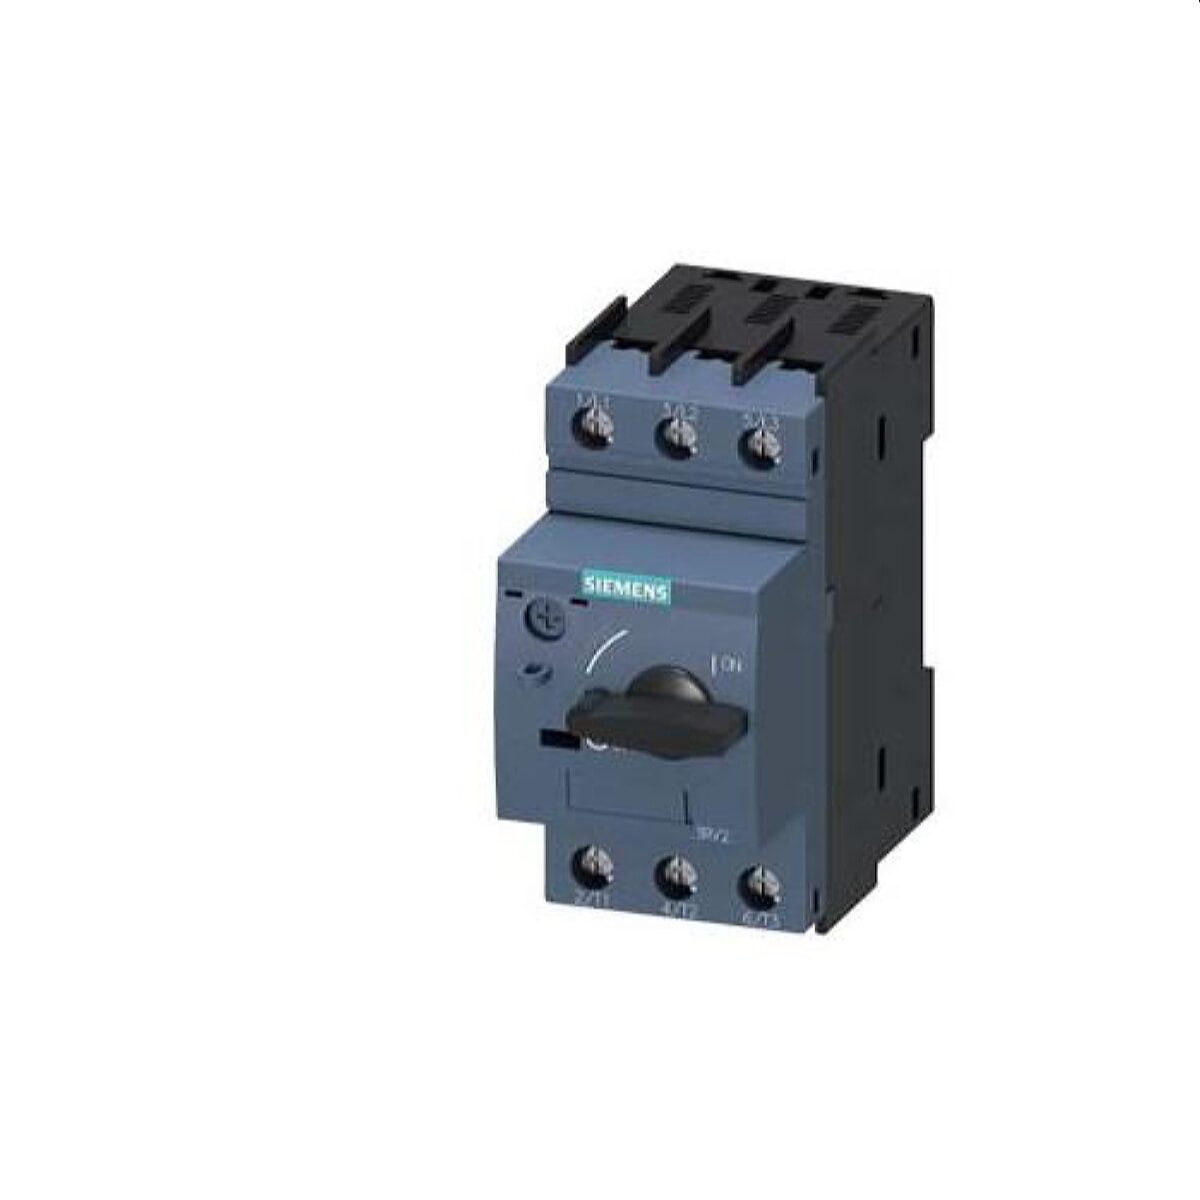 Siemens Leistungsschalter S00 1,8-2,5A 3RV2011-1CA10